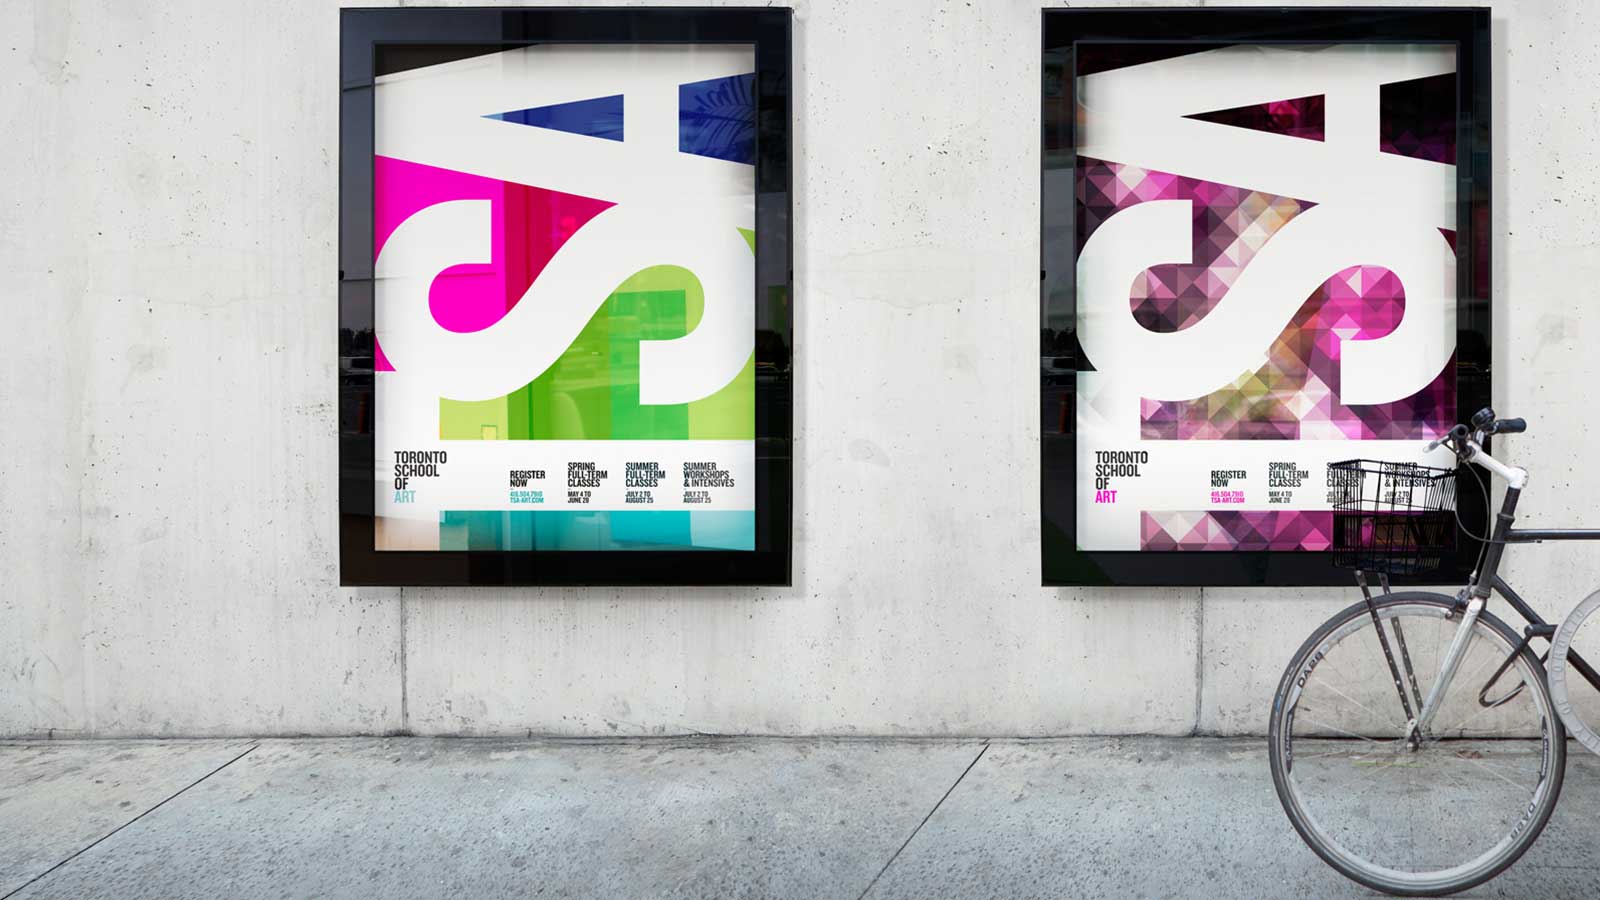 Toronto School of Art | Refonte de l’image de marque | Design, Design de site web, Développement de site web, Image de marque, Matérial collatéral, Mobilité adaptée, Stratégie de marque